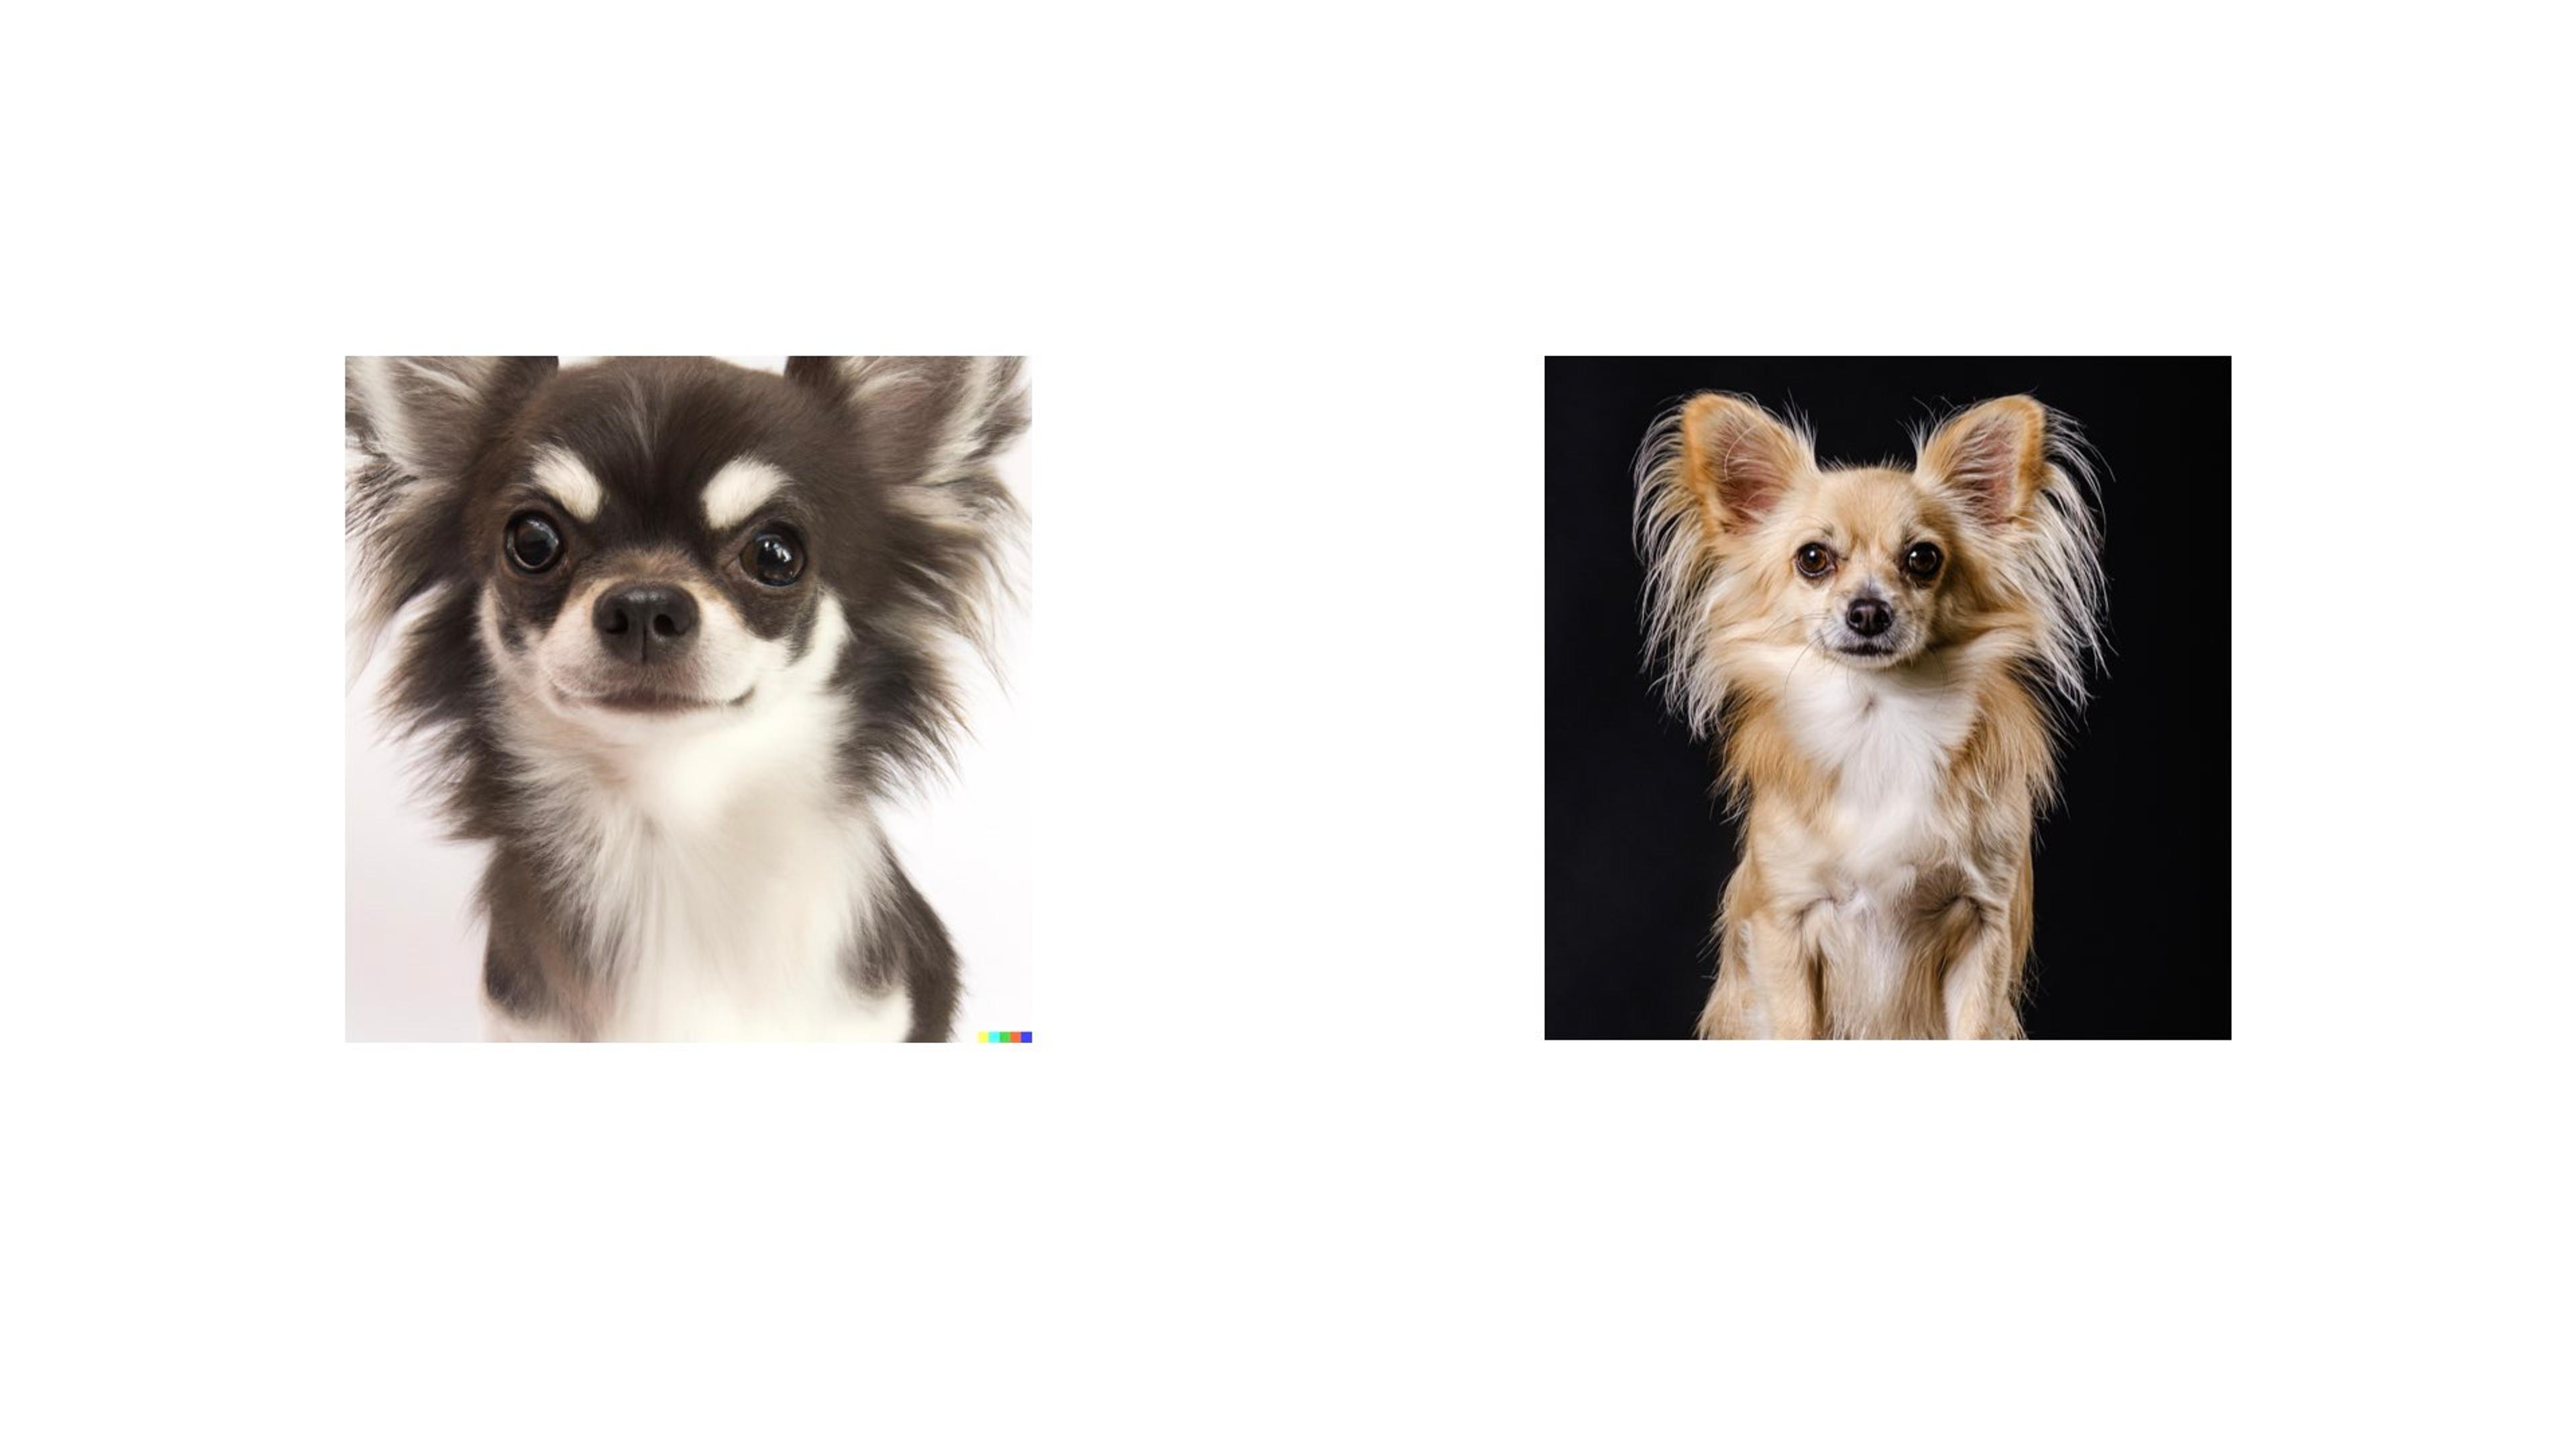 AI Chihuahua versus real Chihuahua